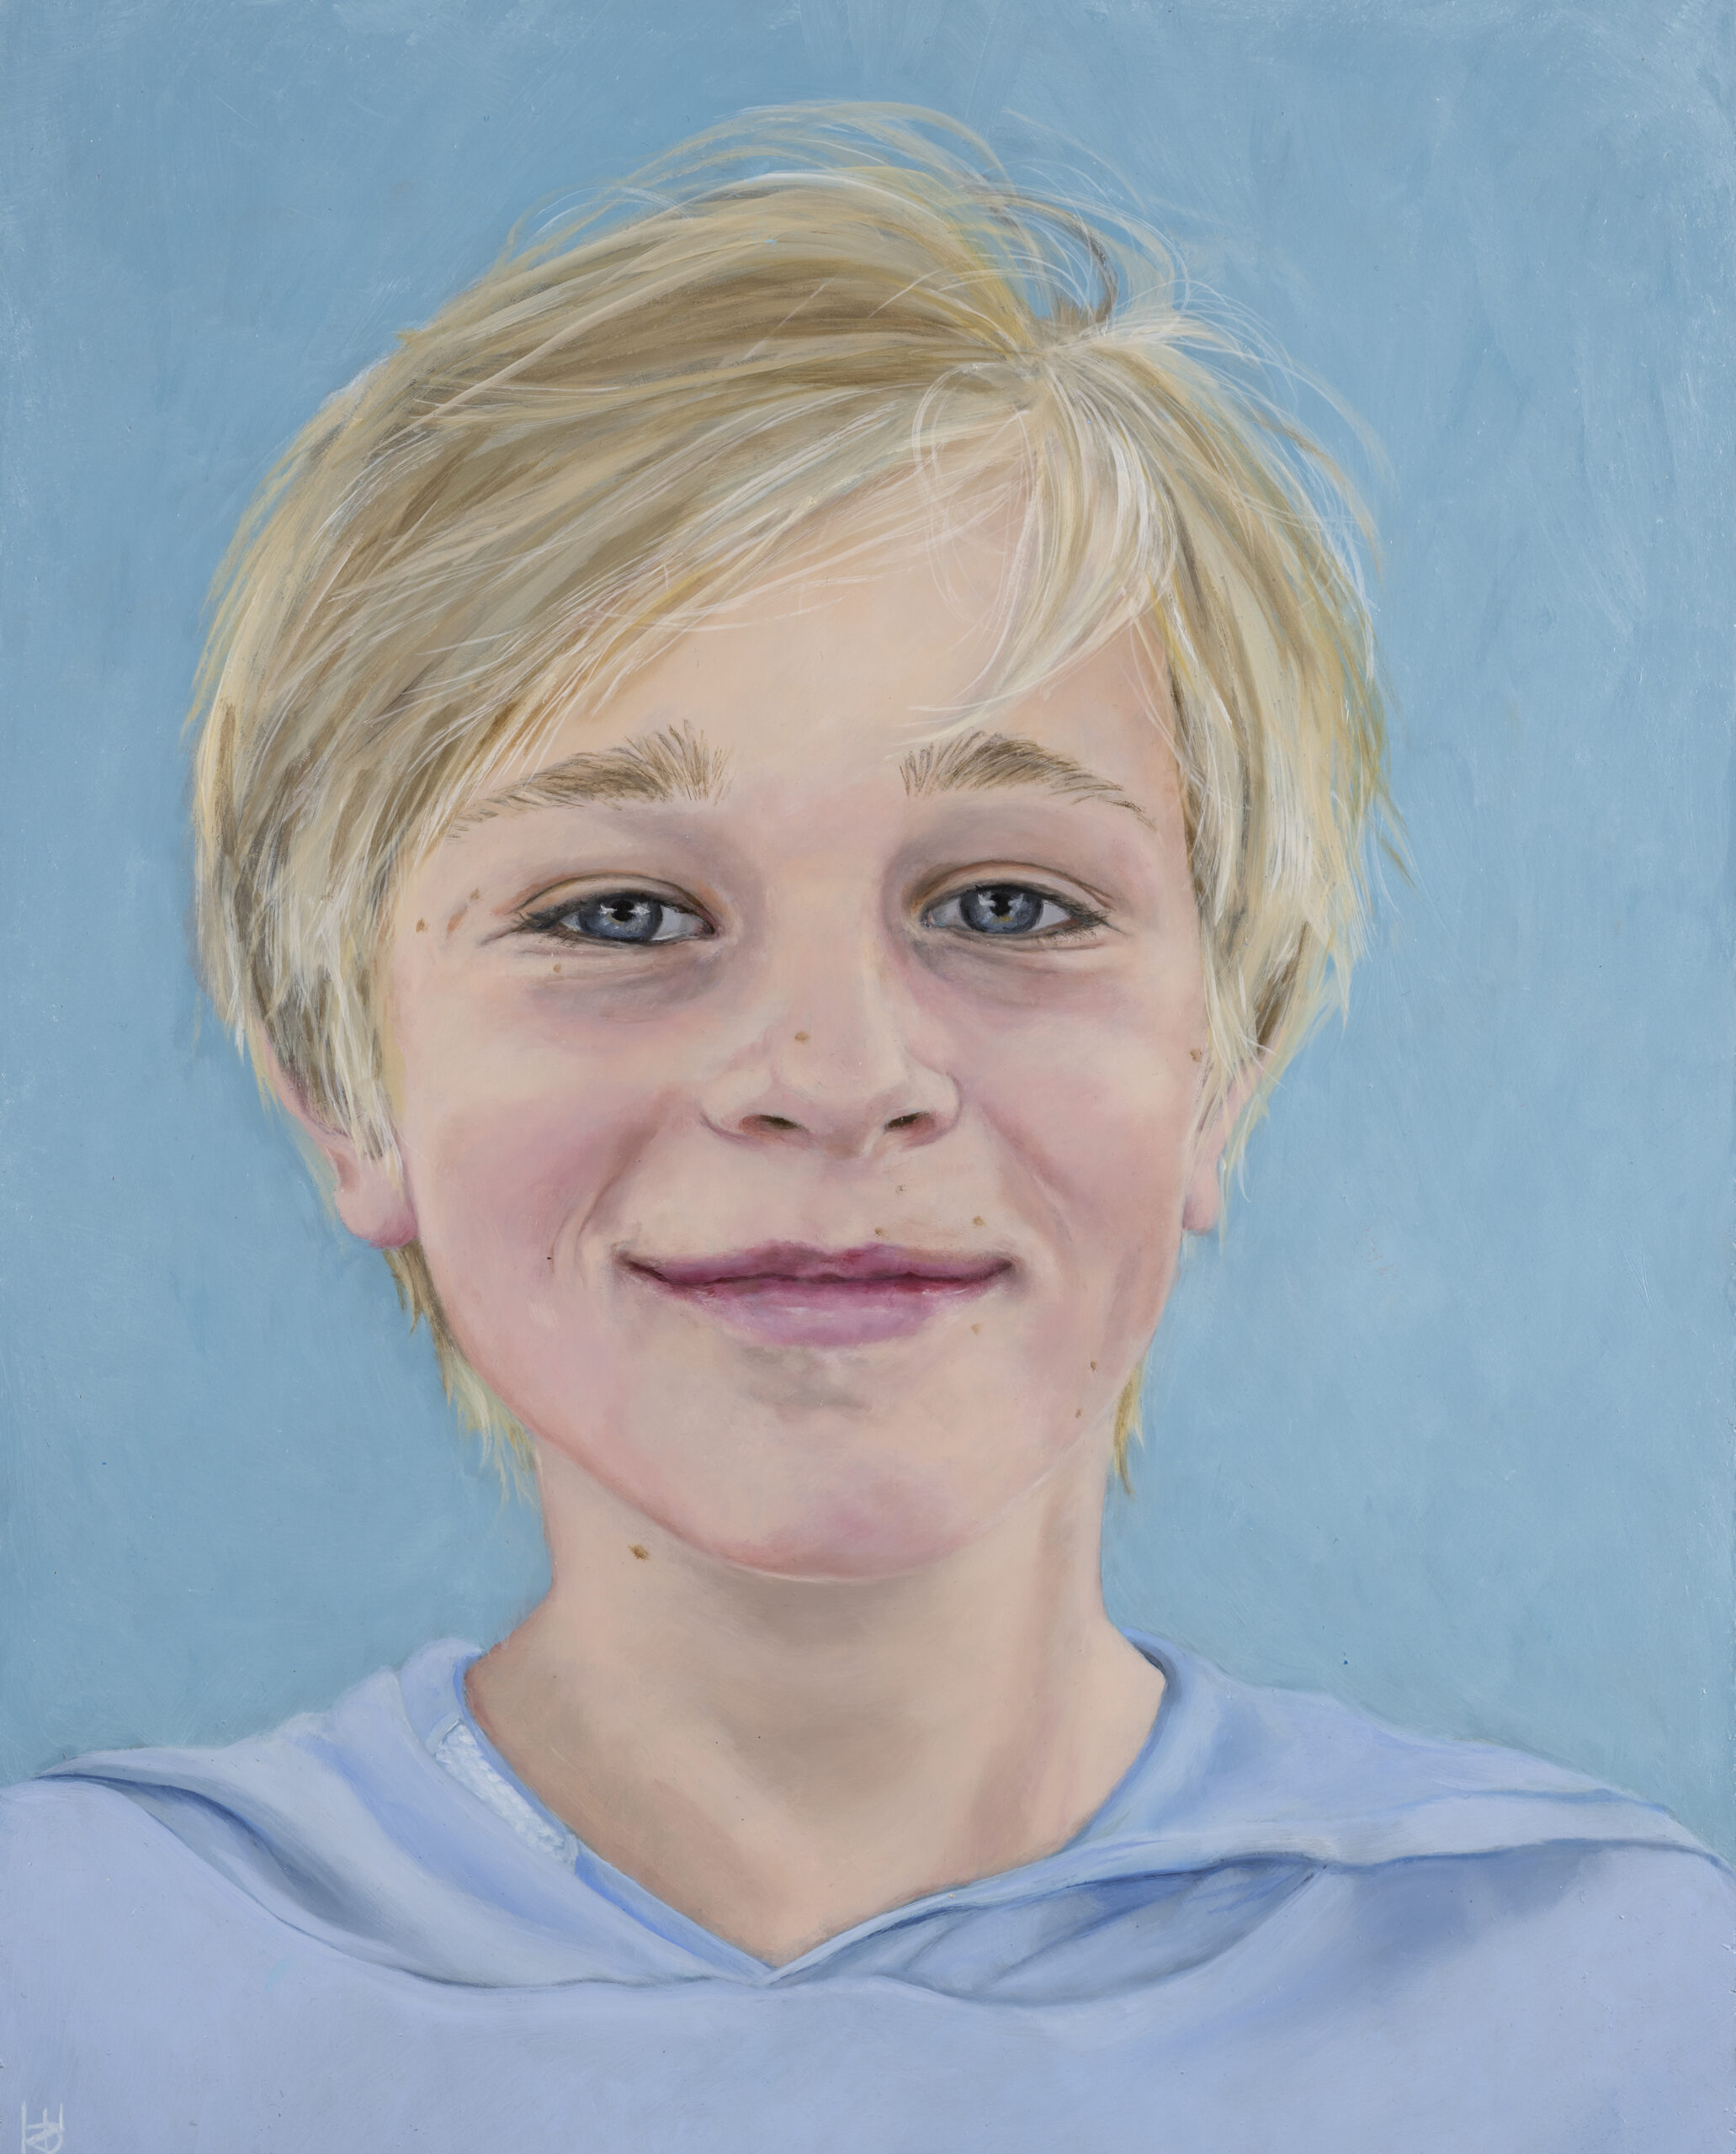 Een olieverfportret op een paneel van 40 x 50 cm, in opdracht geschilderd, toont een jongen met blond haar genaamd Robbert tegen een lichtblauwe achtergrond. Dit kunstwerk is in 2022 geschilderd door portretschilder Anneke Ensing.